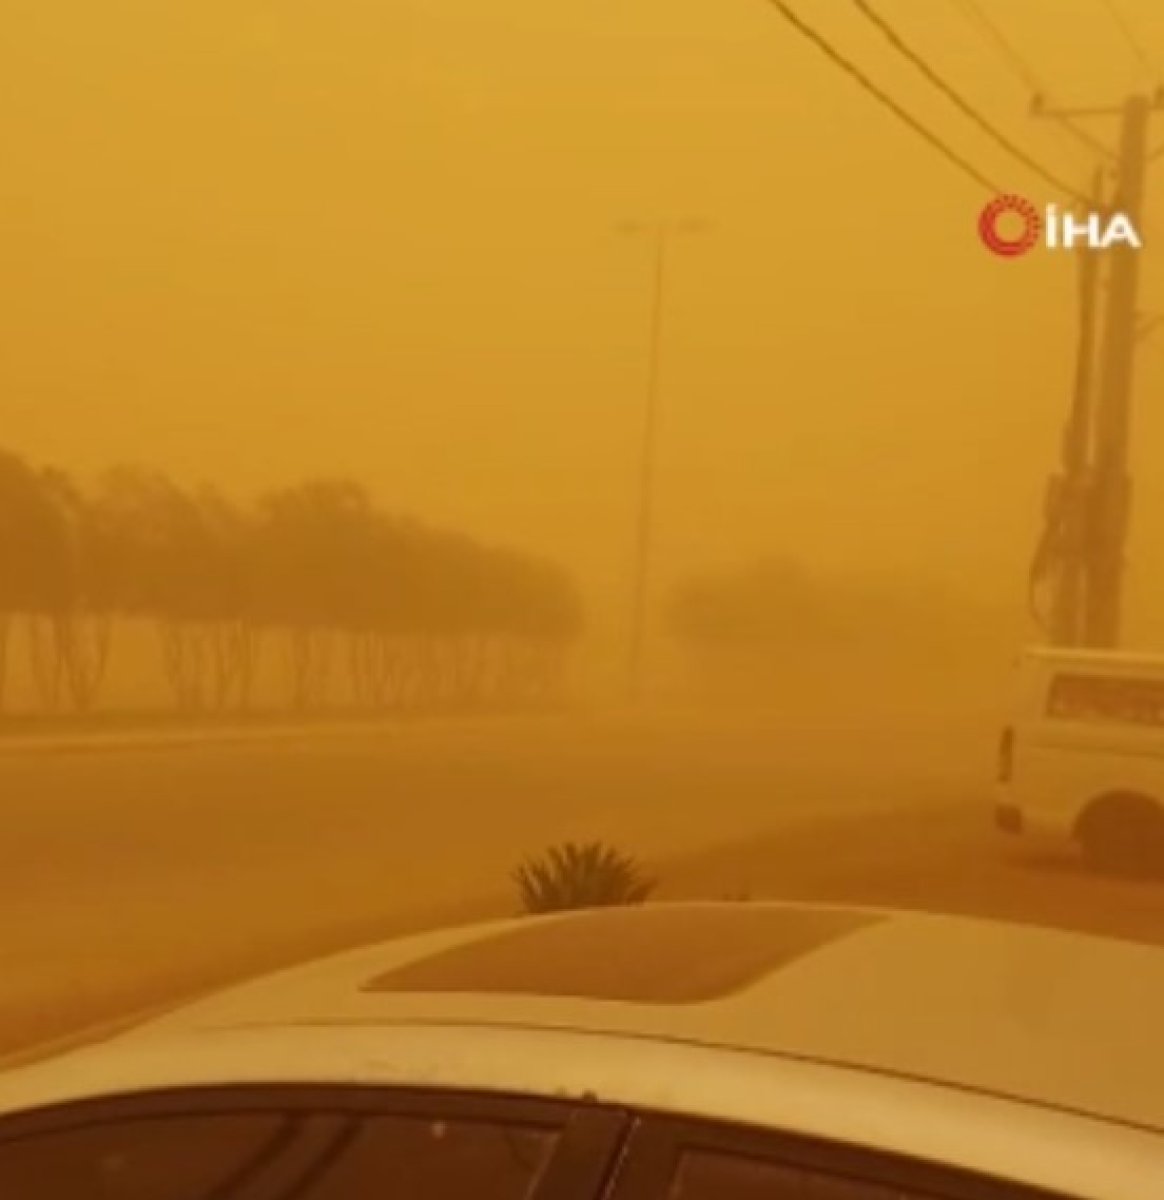 Sandstorm in Saudi Arabia #3